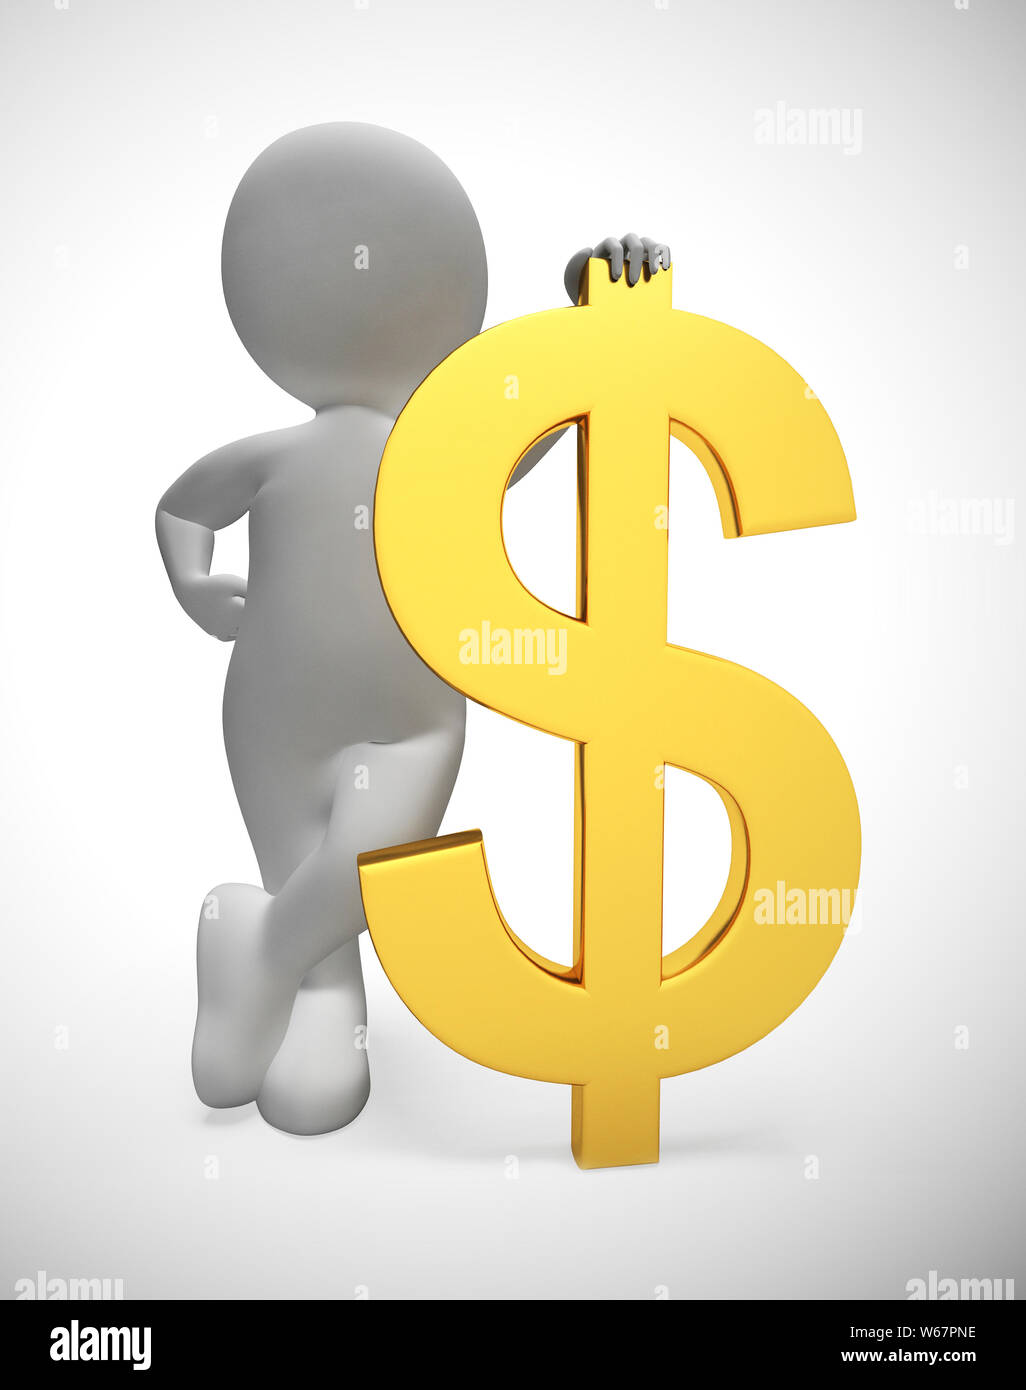 Dollarzeichen Konzept Symbol bedeutet, dass viele Fonds oder Einsparungen. Reich mit in Dollar cash - 3 Abbildung d Stockfoto